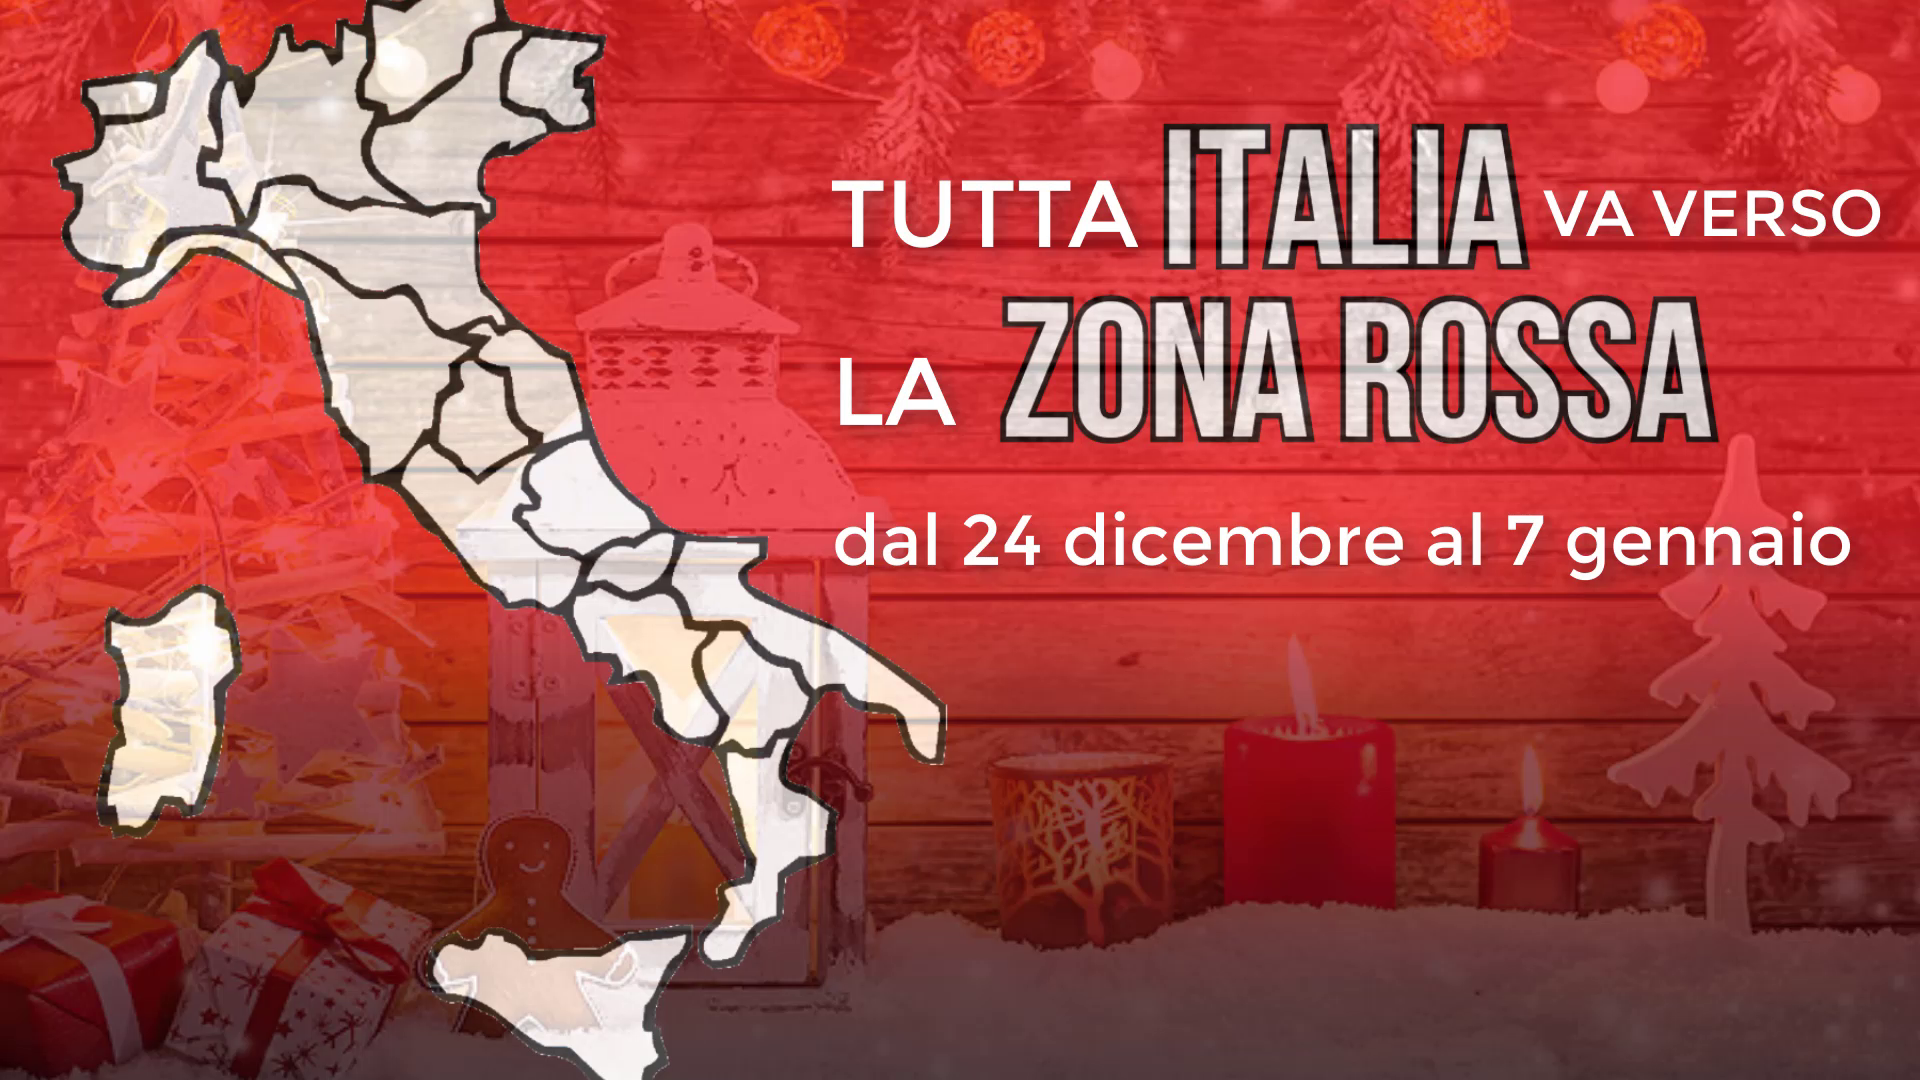 Covid – Tutta l’Italia va verso la zona rossa dal 24 dicembre al 7 gennaio: questa l’indicazione fornita dal Governo alle Regioni